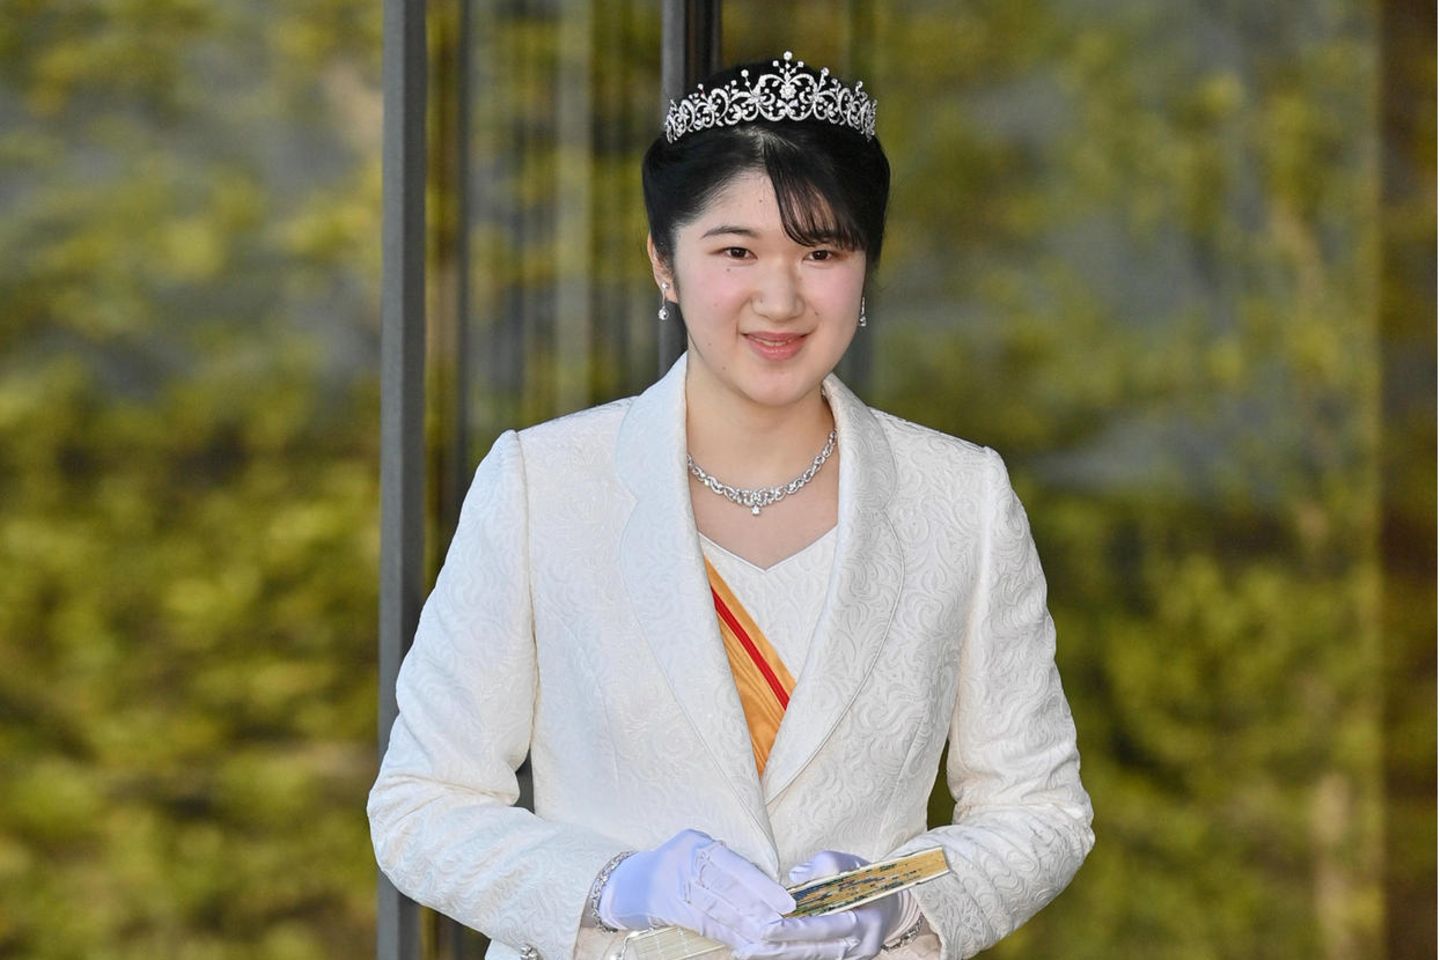 Prinzessin Aiko bei einem Fototermin im Rahmen der Zeremonien zu ihrem 20. Geburtstag